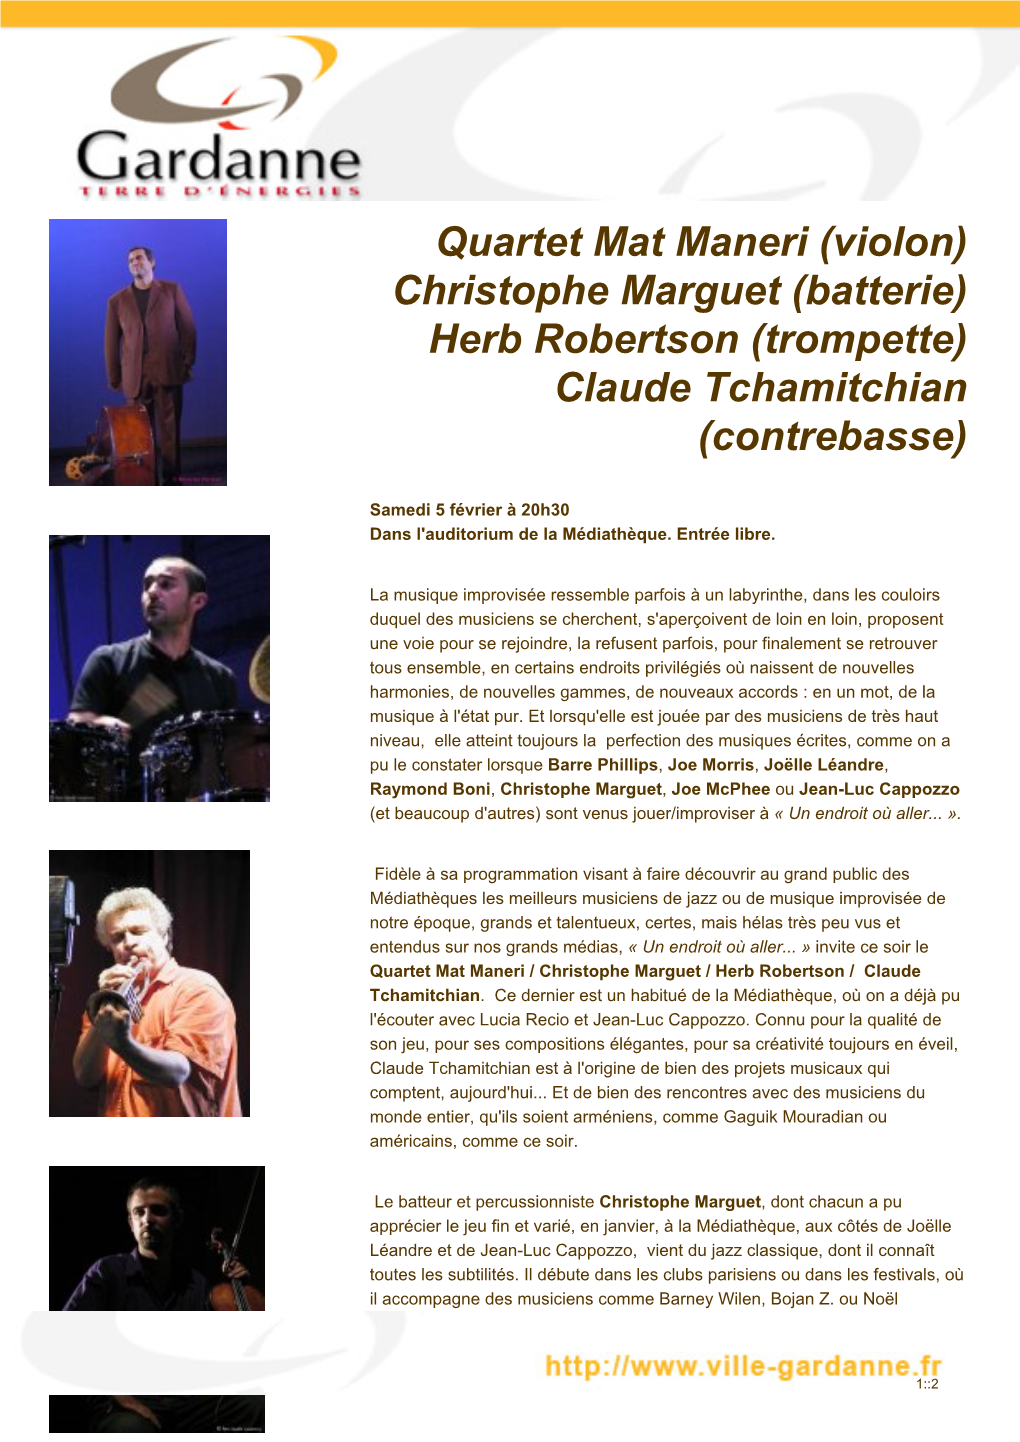 Quartet Mat Maneri (Violon) Christophe Marguet (Batterie) Herb Robertson (Trompette) Claude Tchamitchian (Contrebasse)